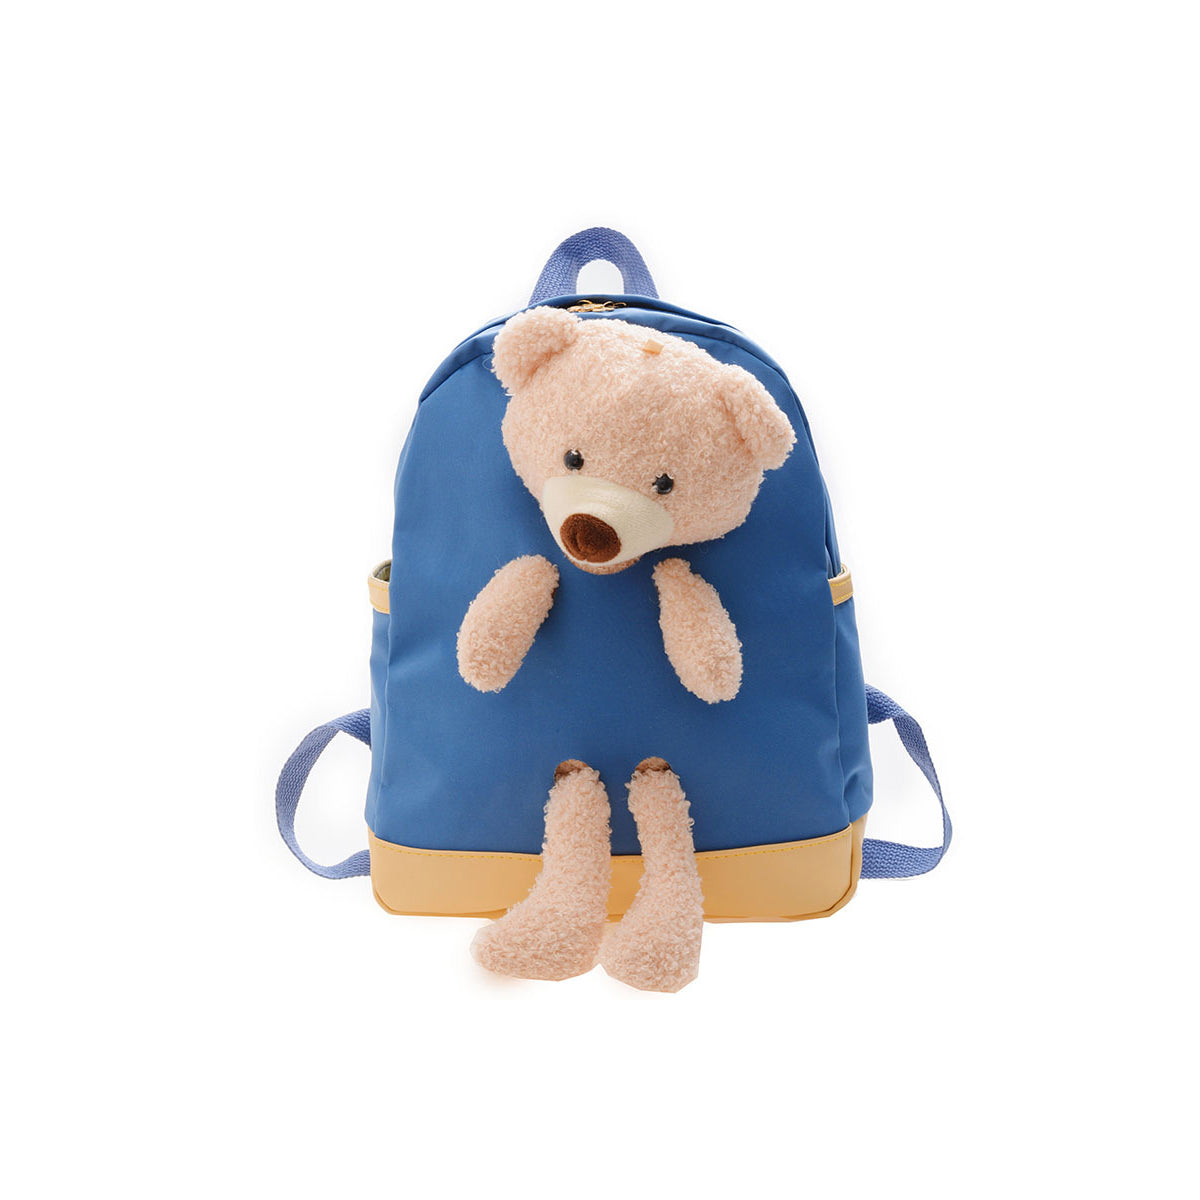 Cute Lightweight Cartoon Children's Fashion Backpack